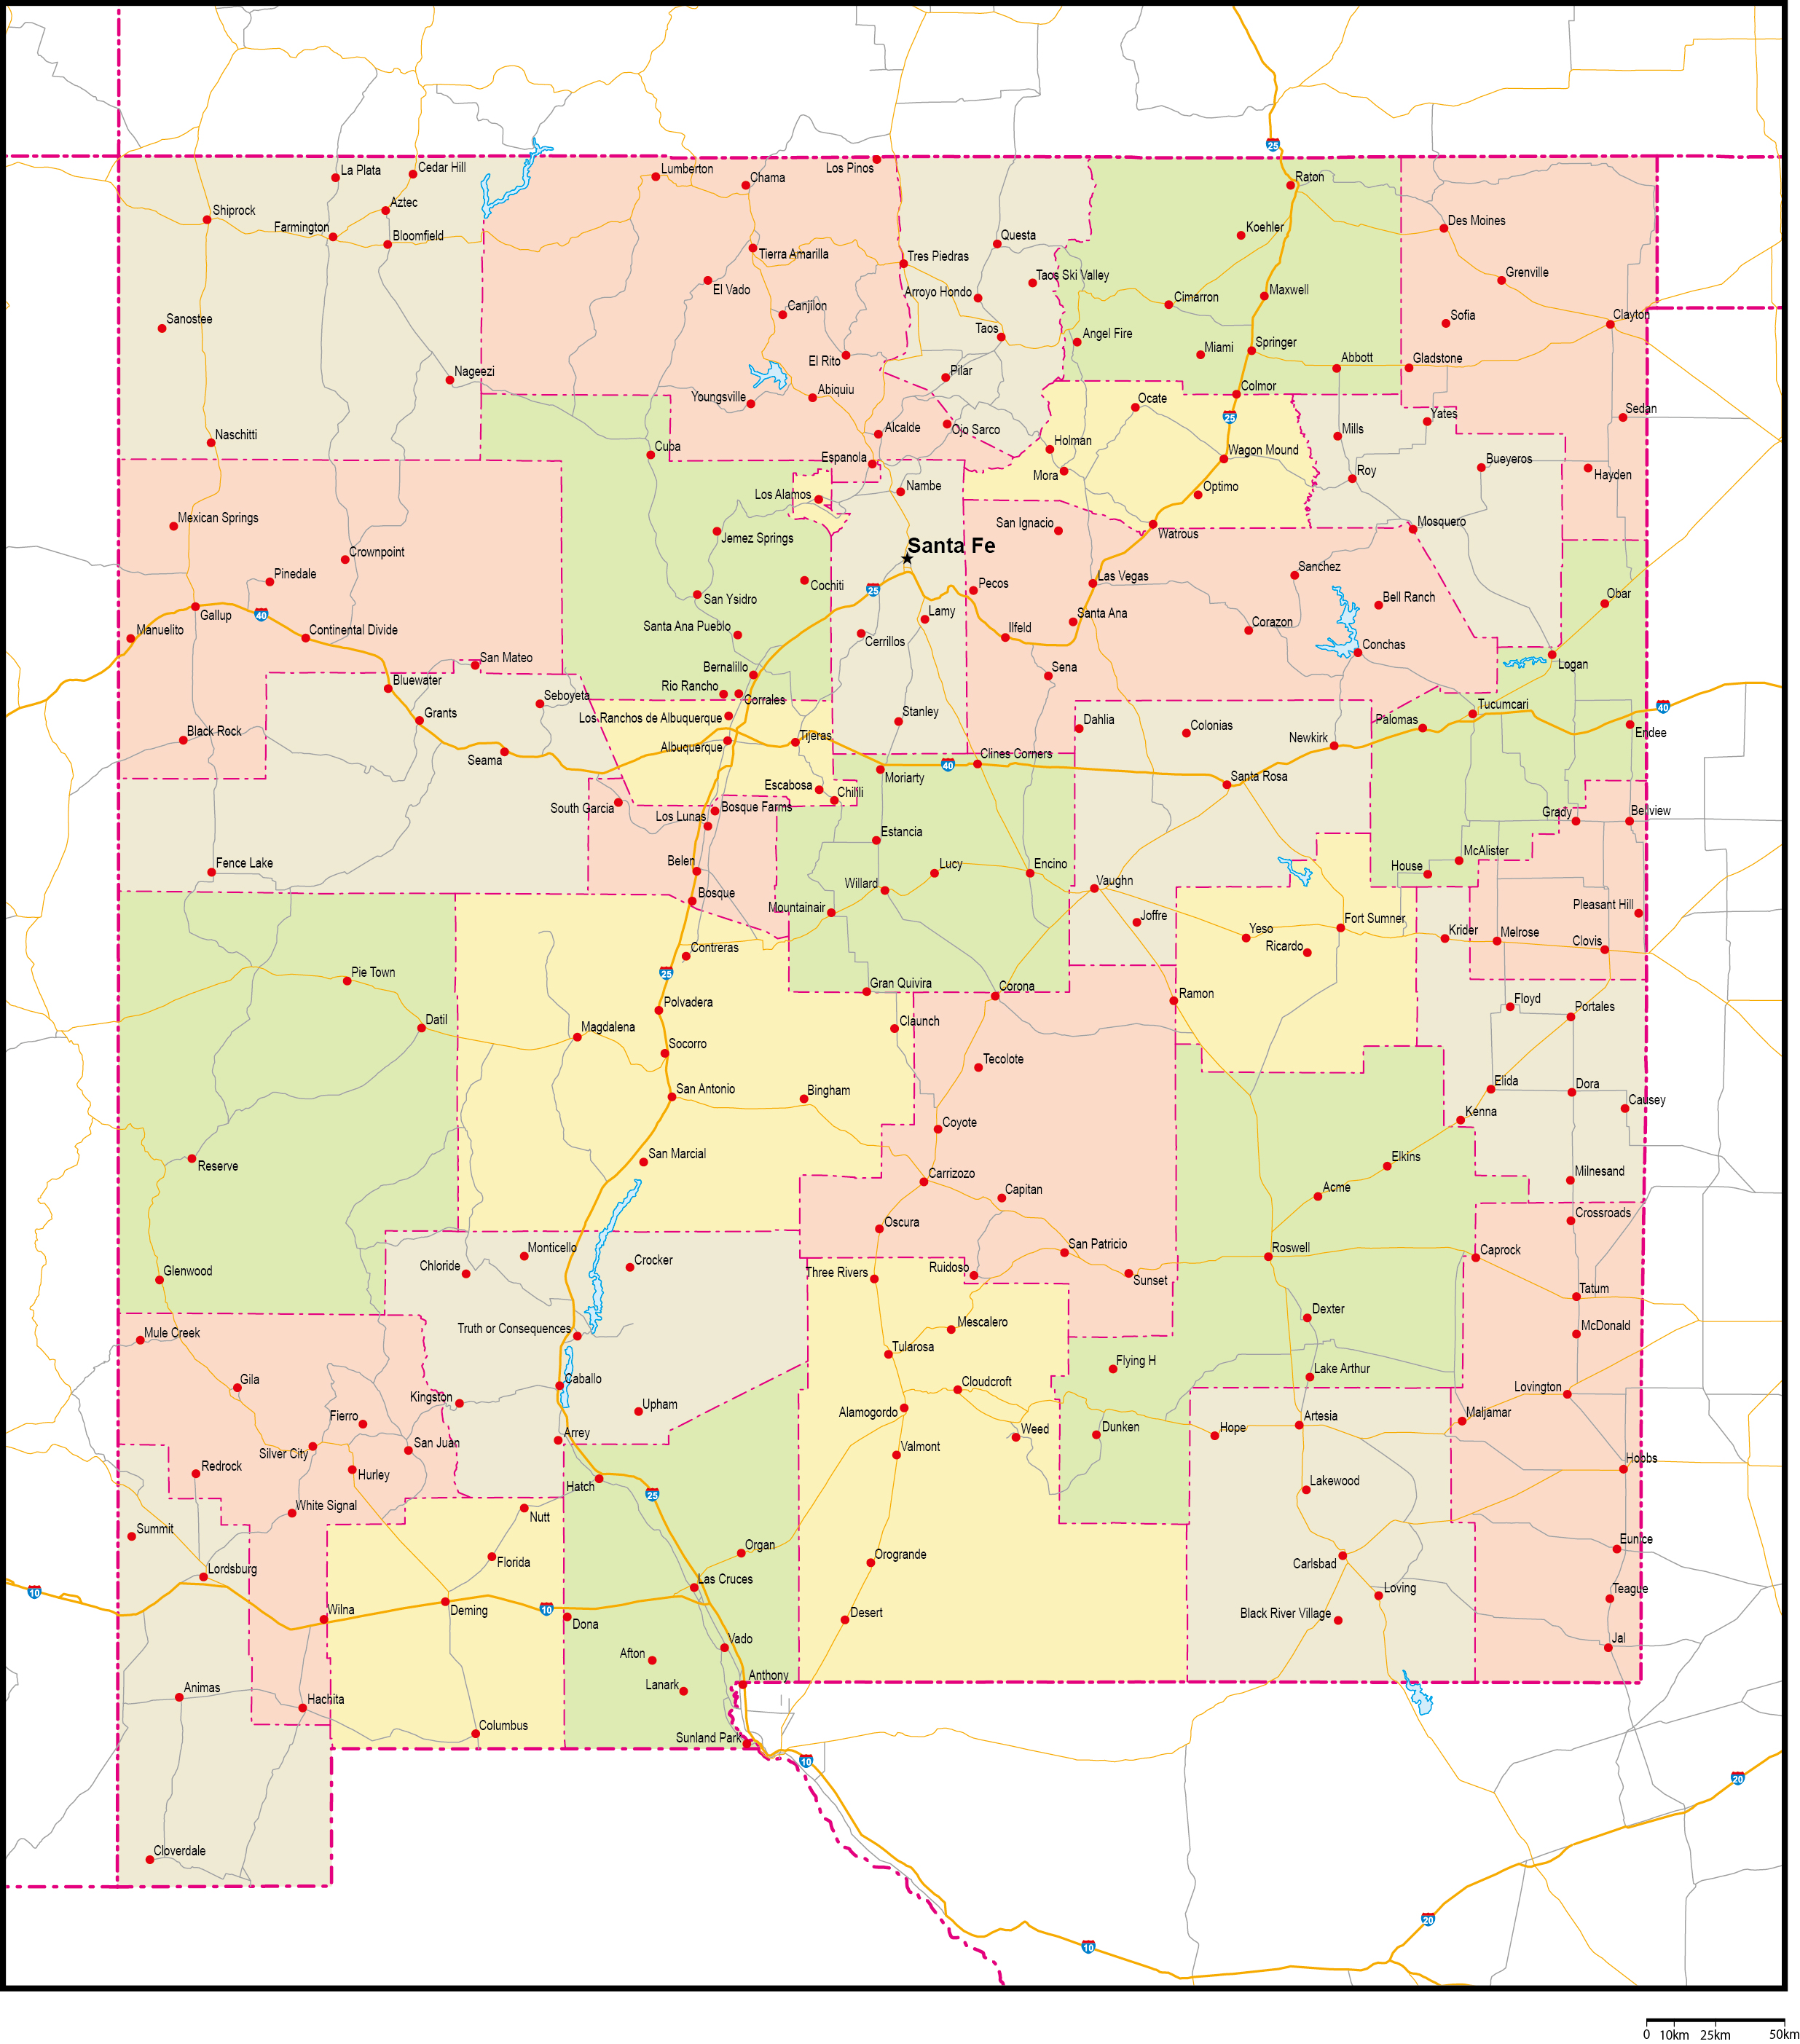 ニューメキシコ州郡色分け地図州都・主な都市・道路あり(英語)フリーデータの画像